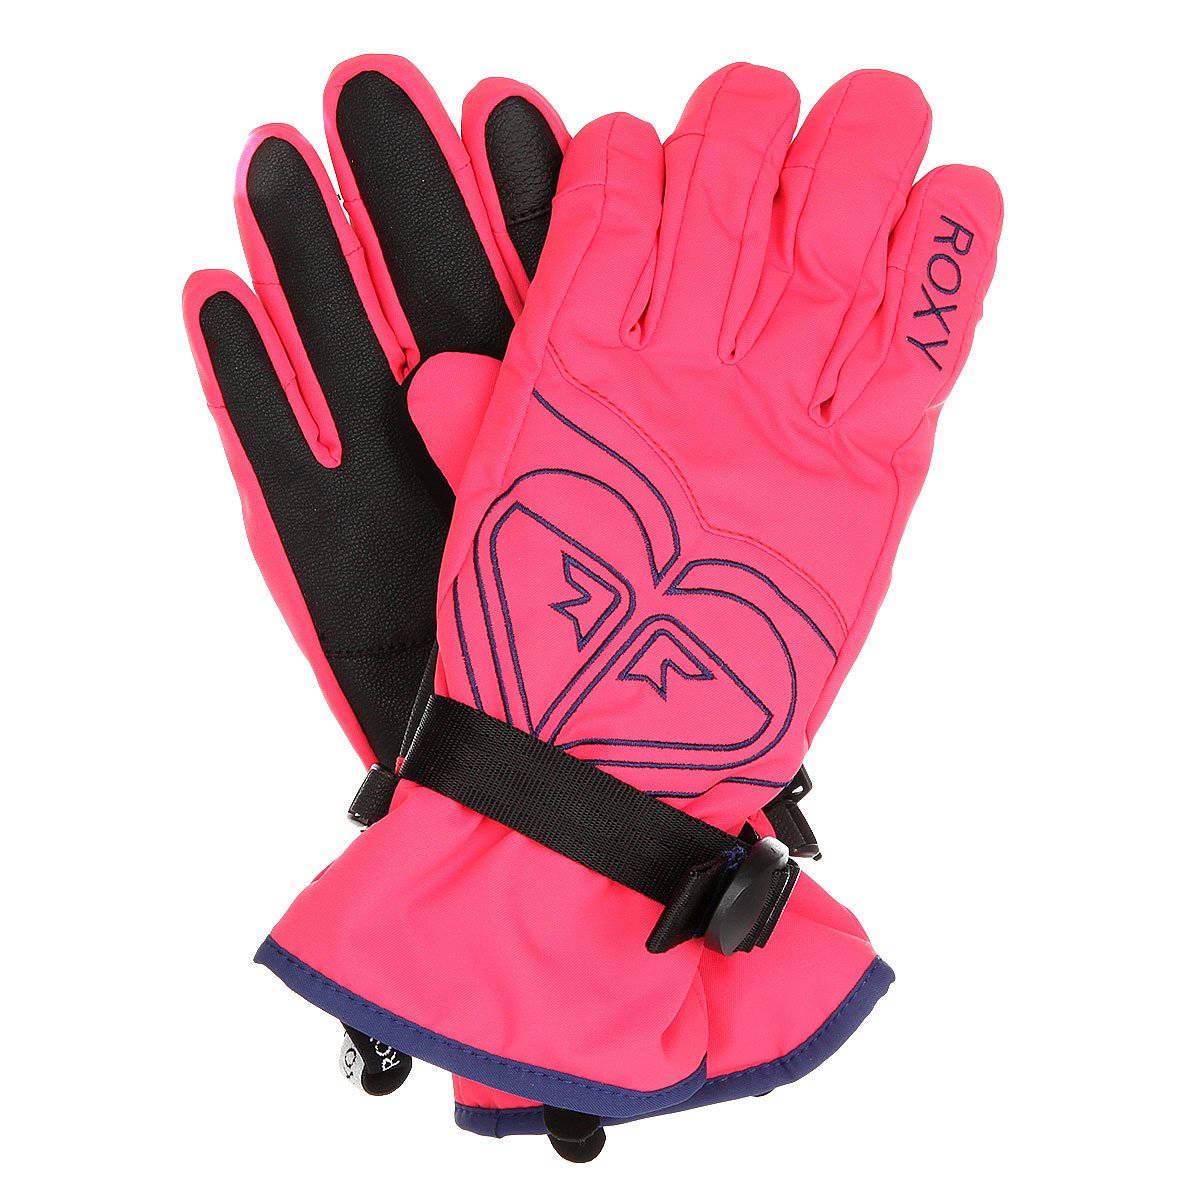 Розовые перчатки сноубордические roxy. Ziener перчатки сноубордические с защитой. Рокси перчатки женские. Перчатки для сноуборда женские. Лыжные перчатки розовые.